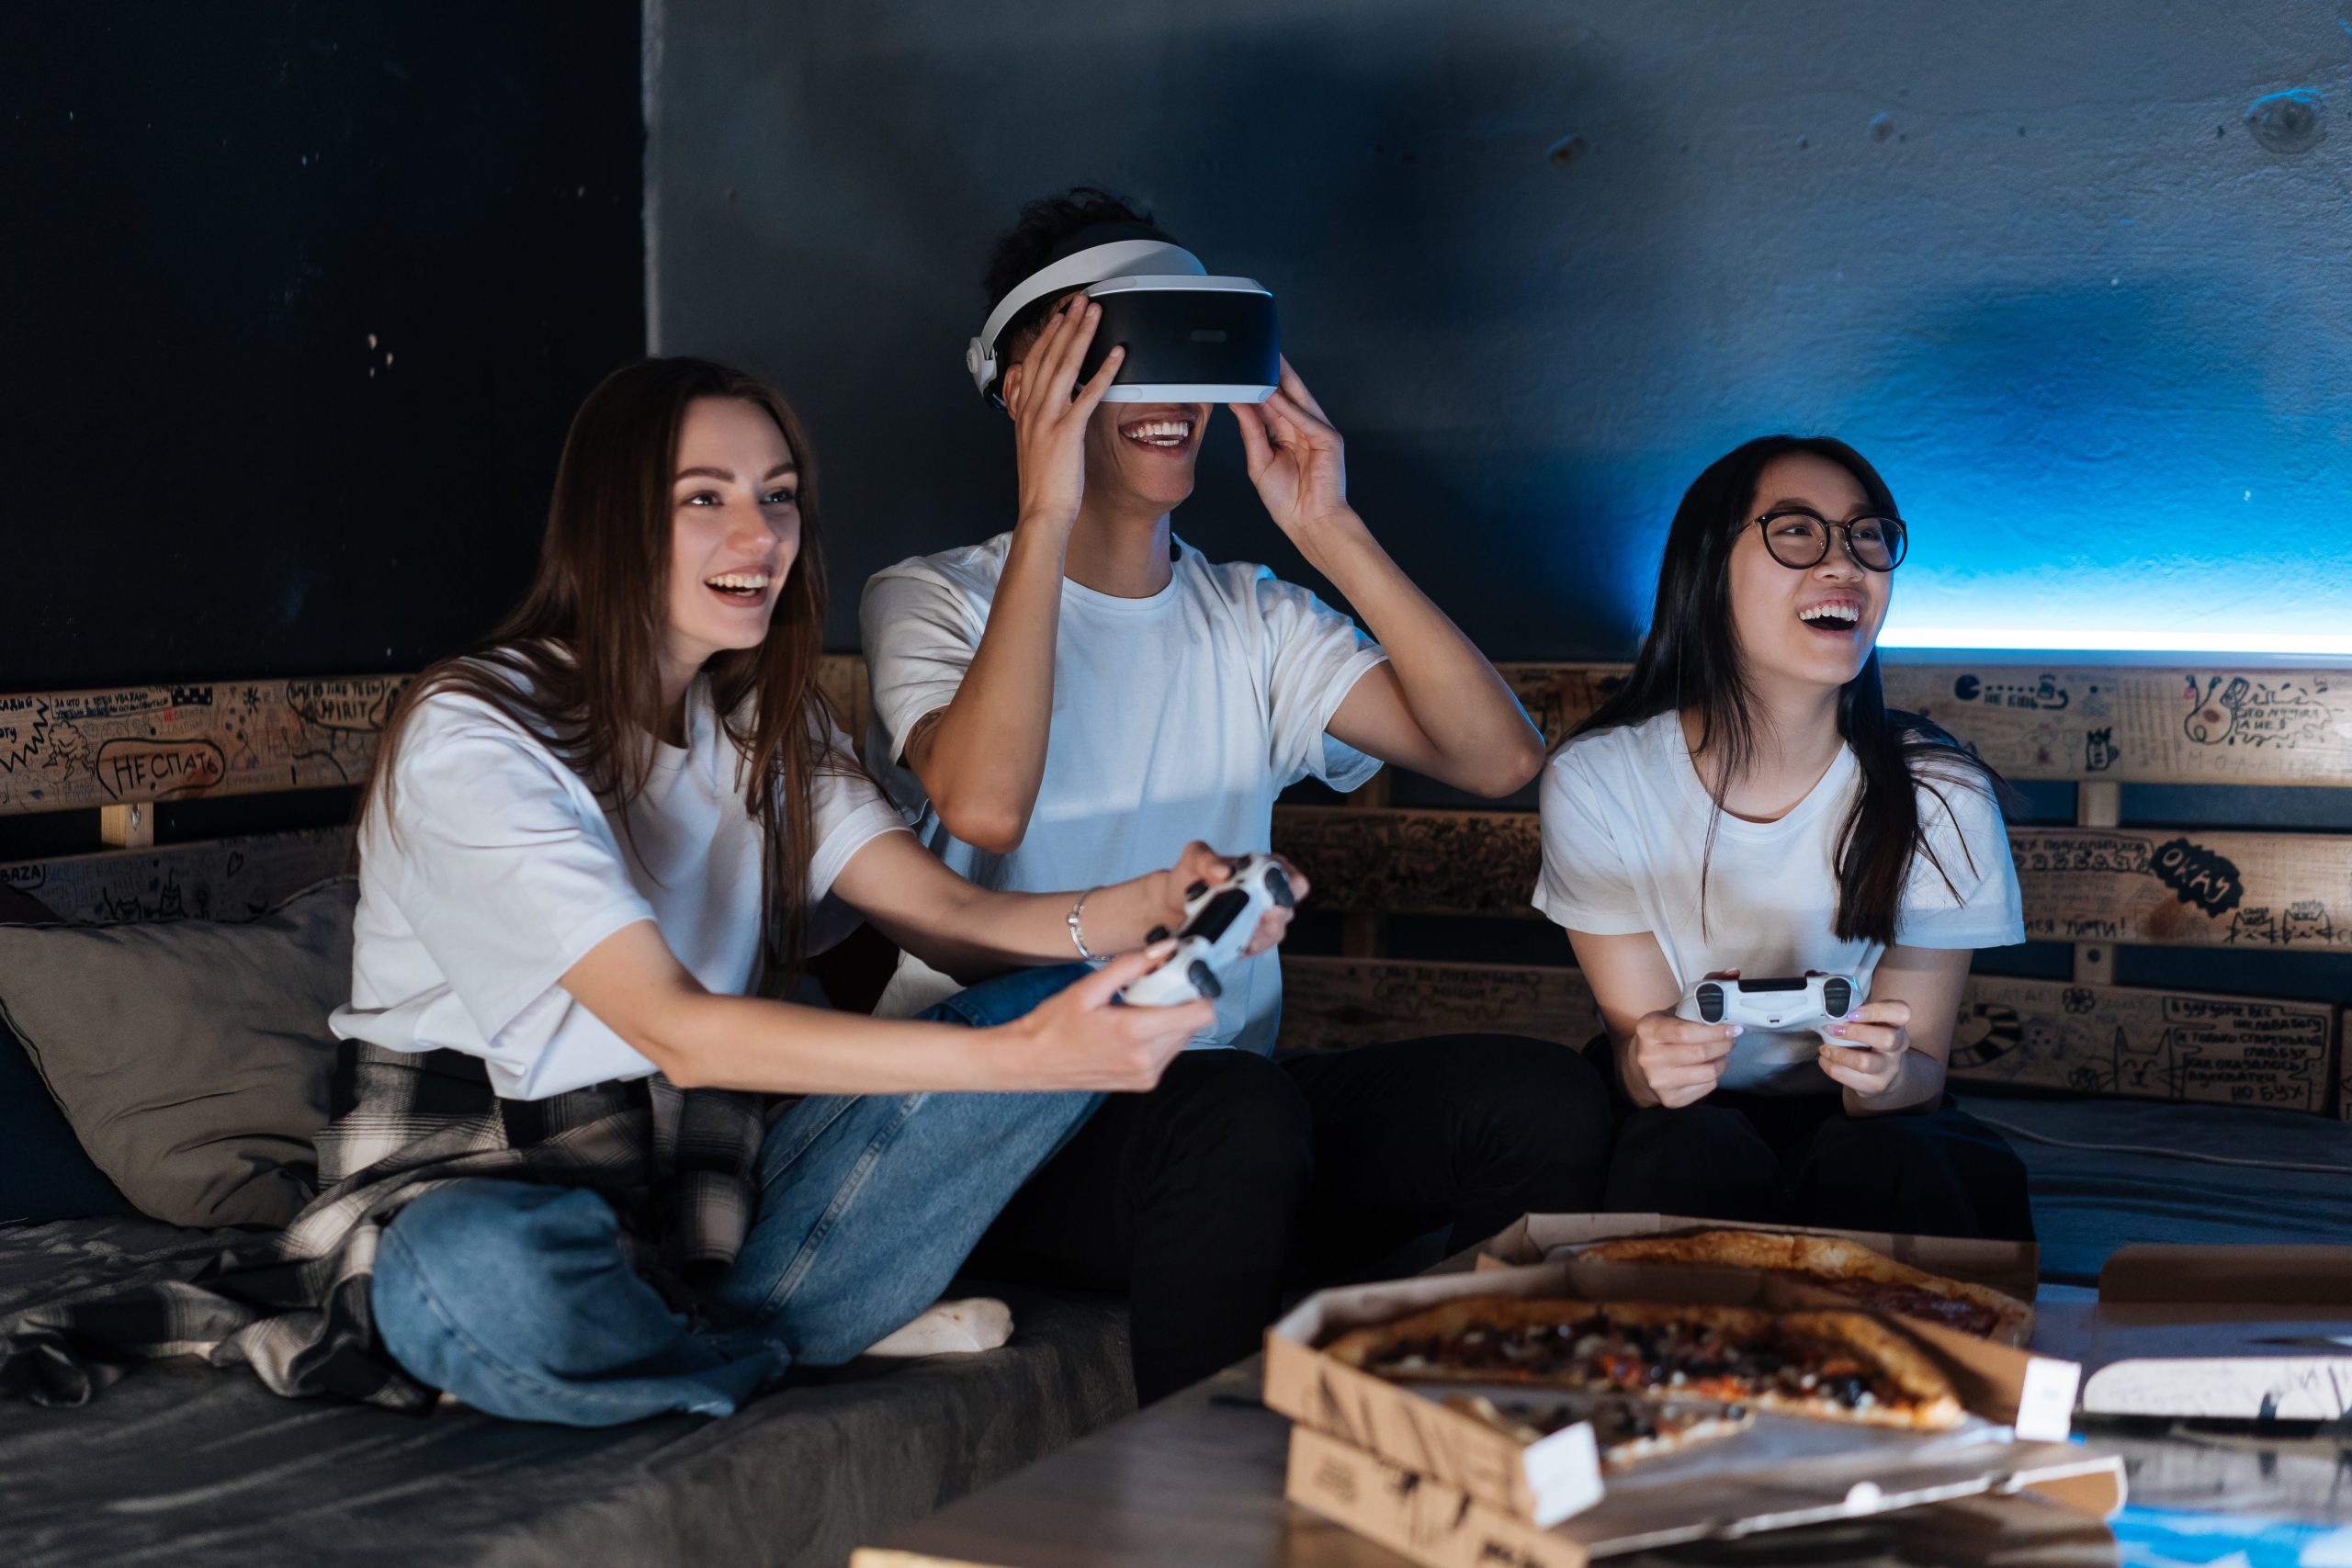 Nuoret istuvat sohvalla, pelaavat, käyttävät VR-laseja ja nauravat.